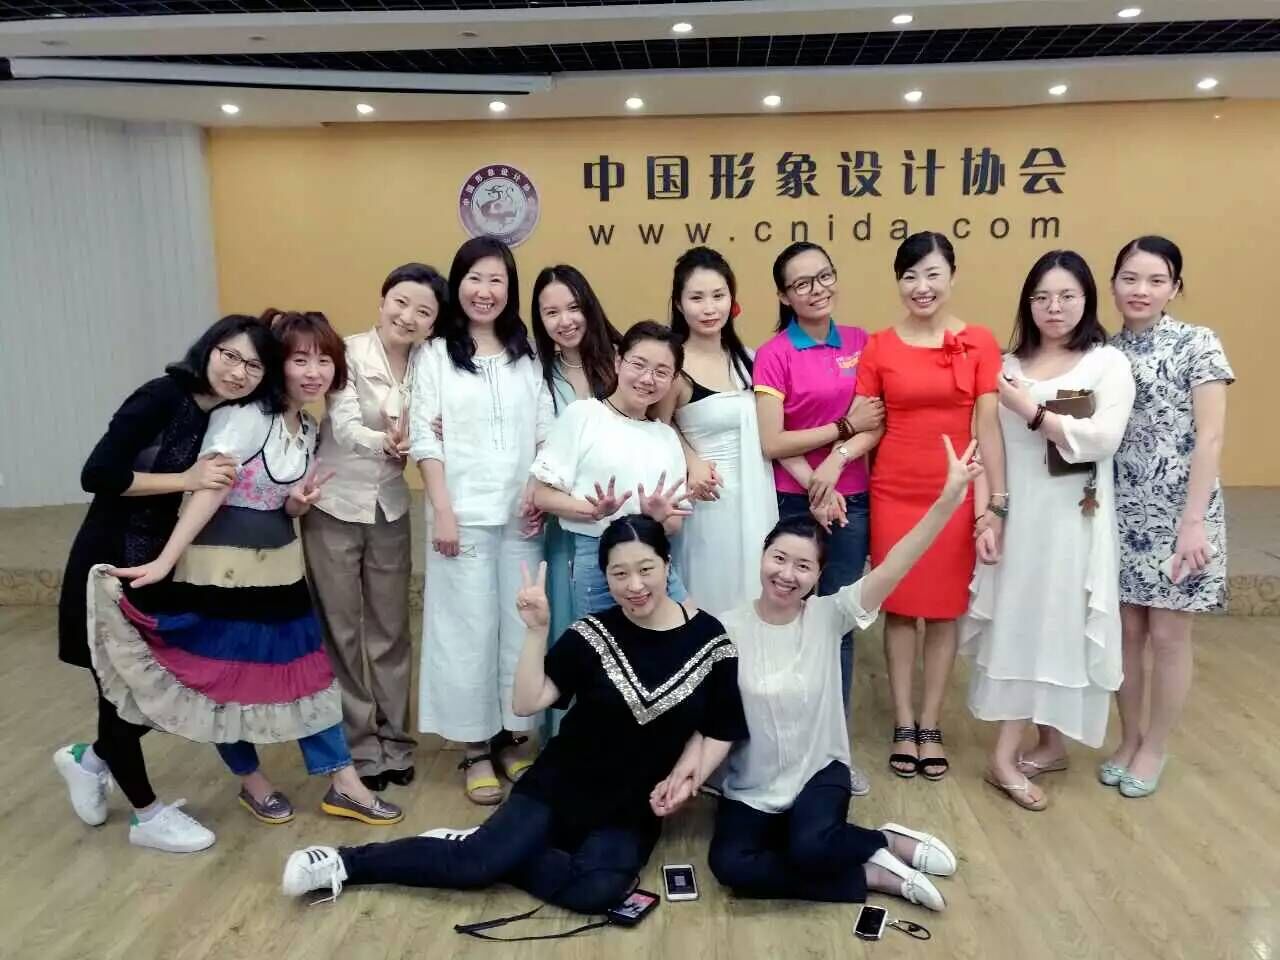 妮子校长赶赴北京参加了中国形象设计协会形象礼仪培训